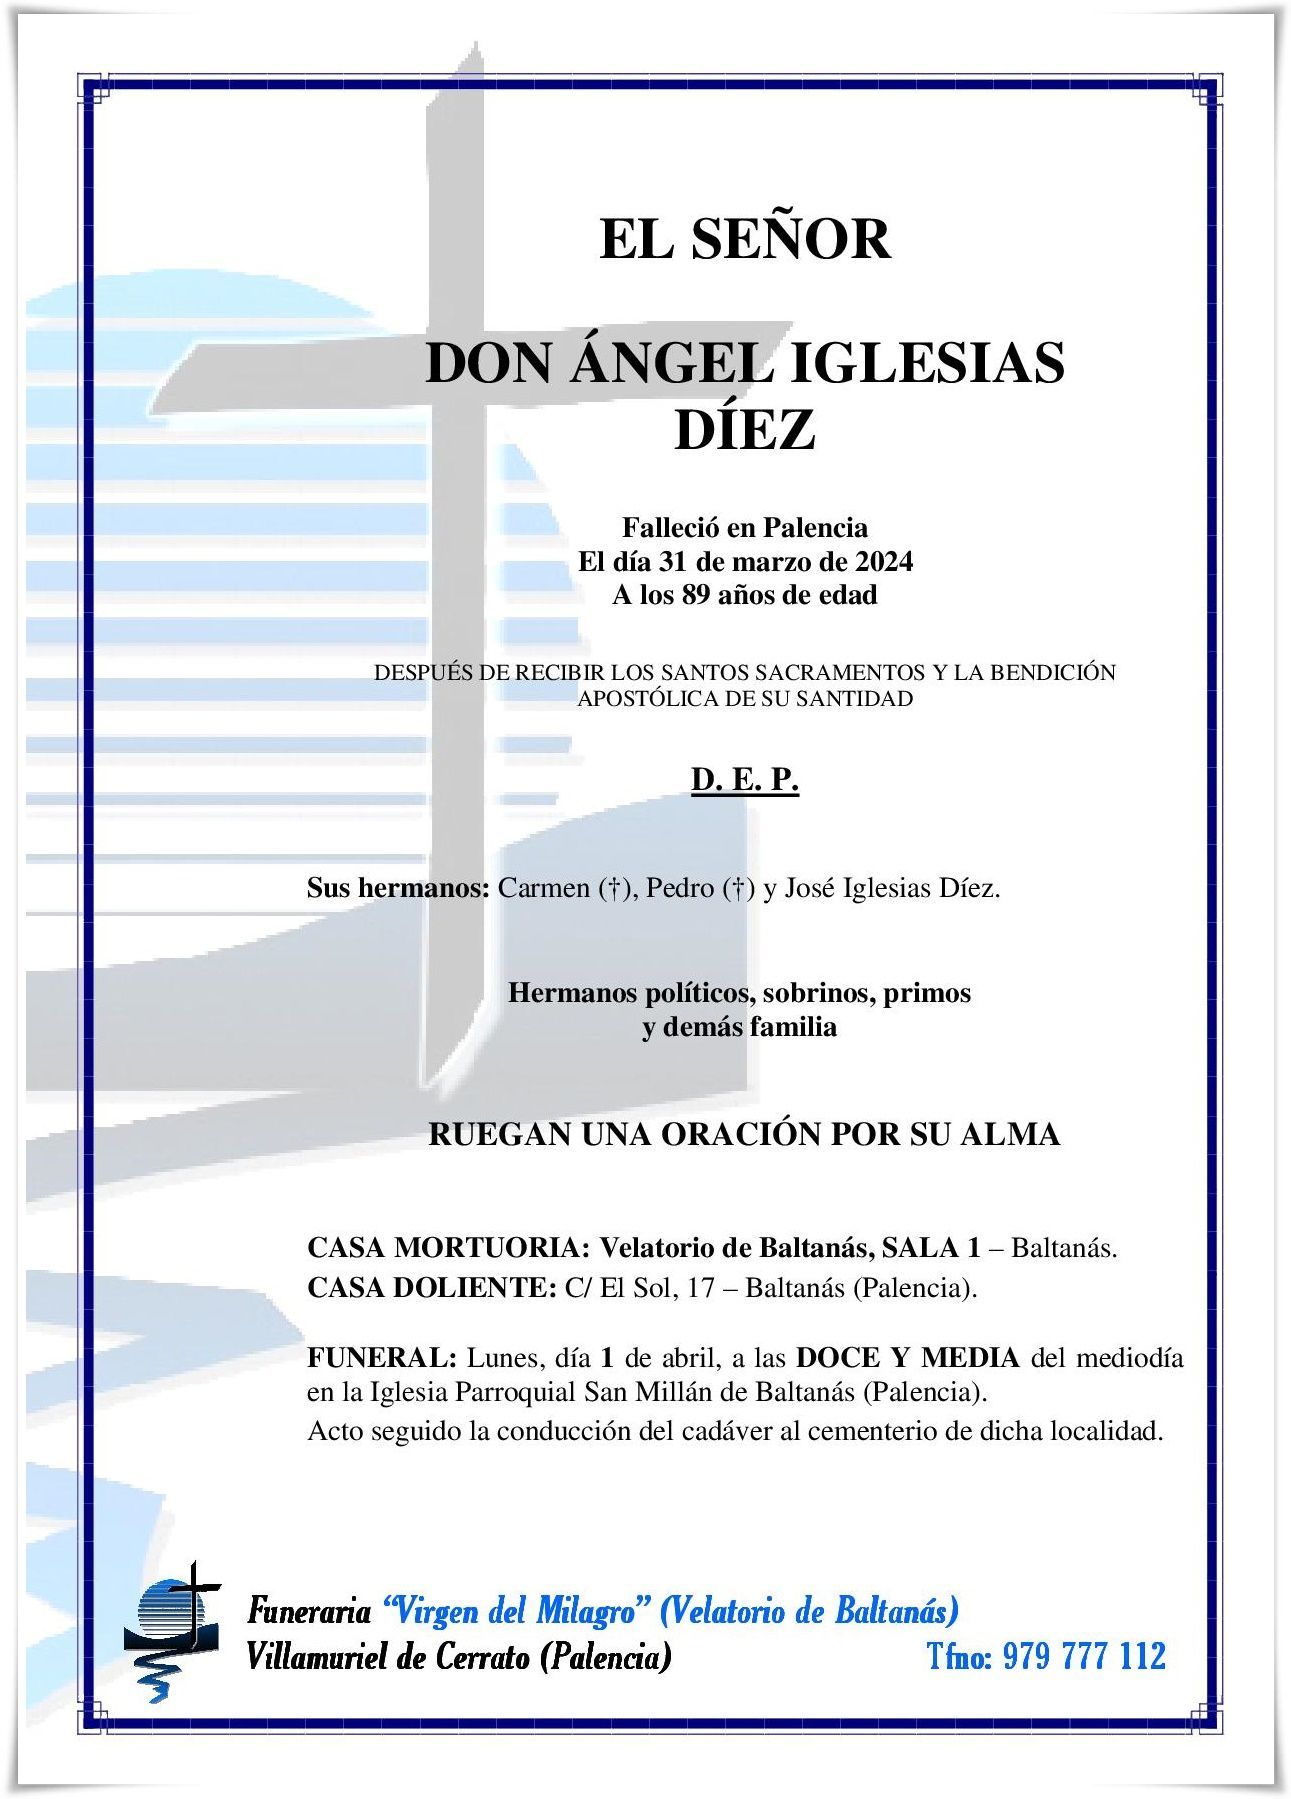 Don Ángel Iglesias Díez